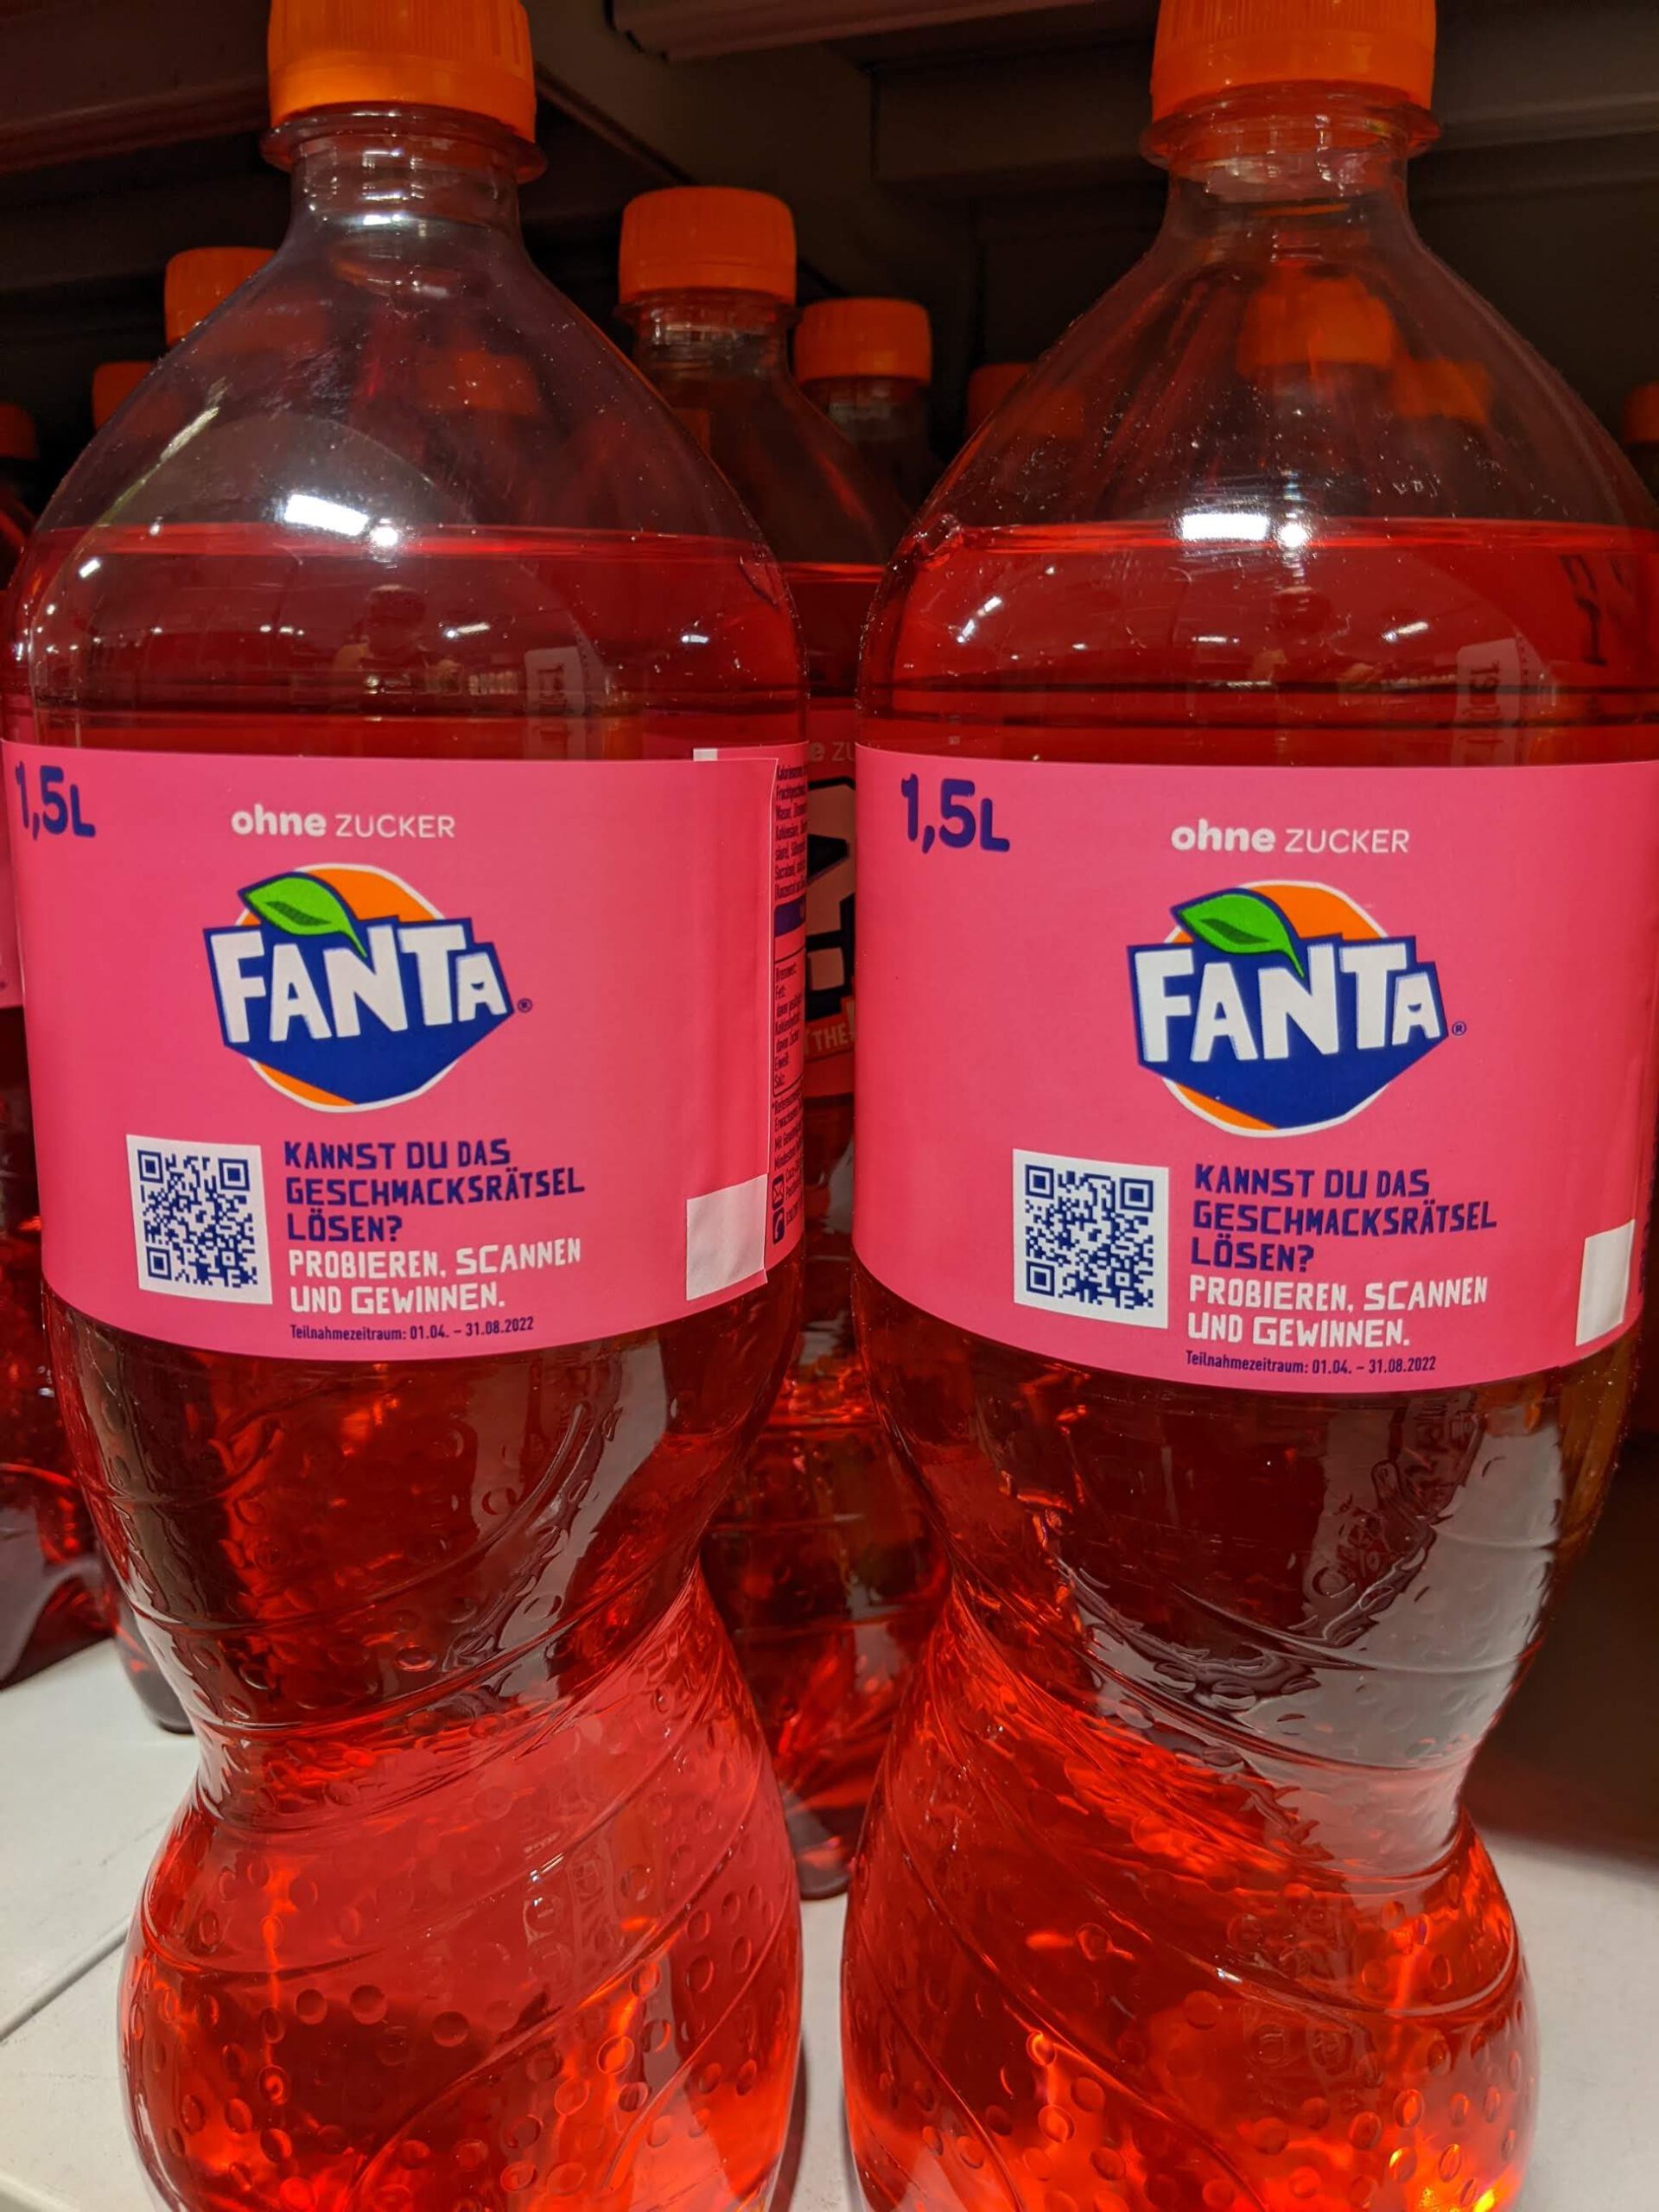 In pink: Fanta Gewinnspiel: Geschmacksrätsel lösen, Traumreisen gewinnen - #WhatTheFanta